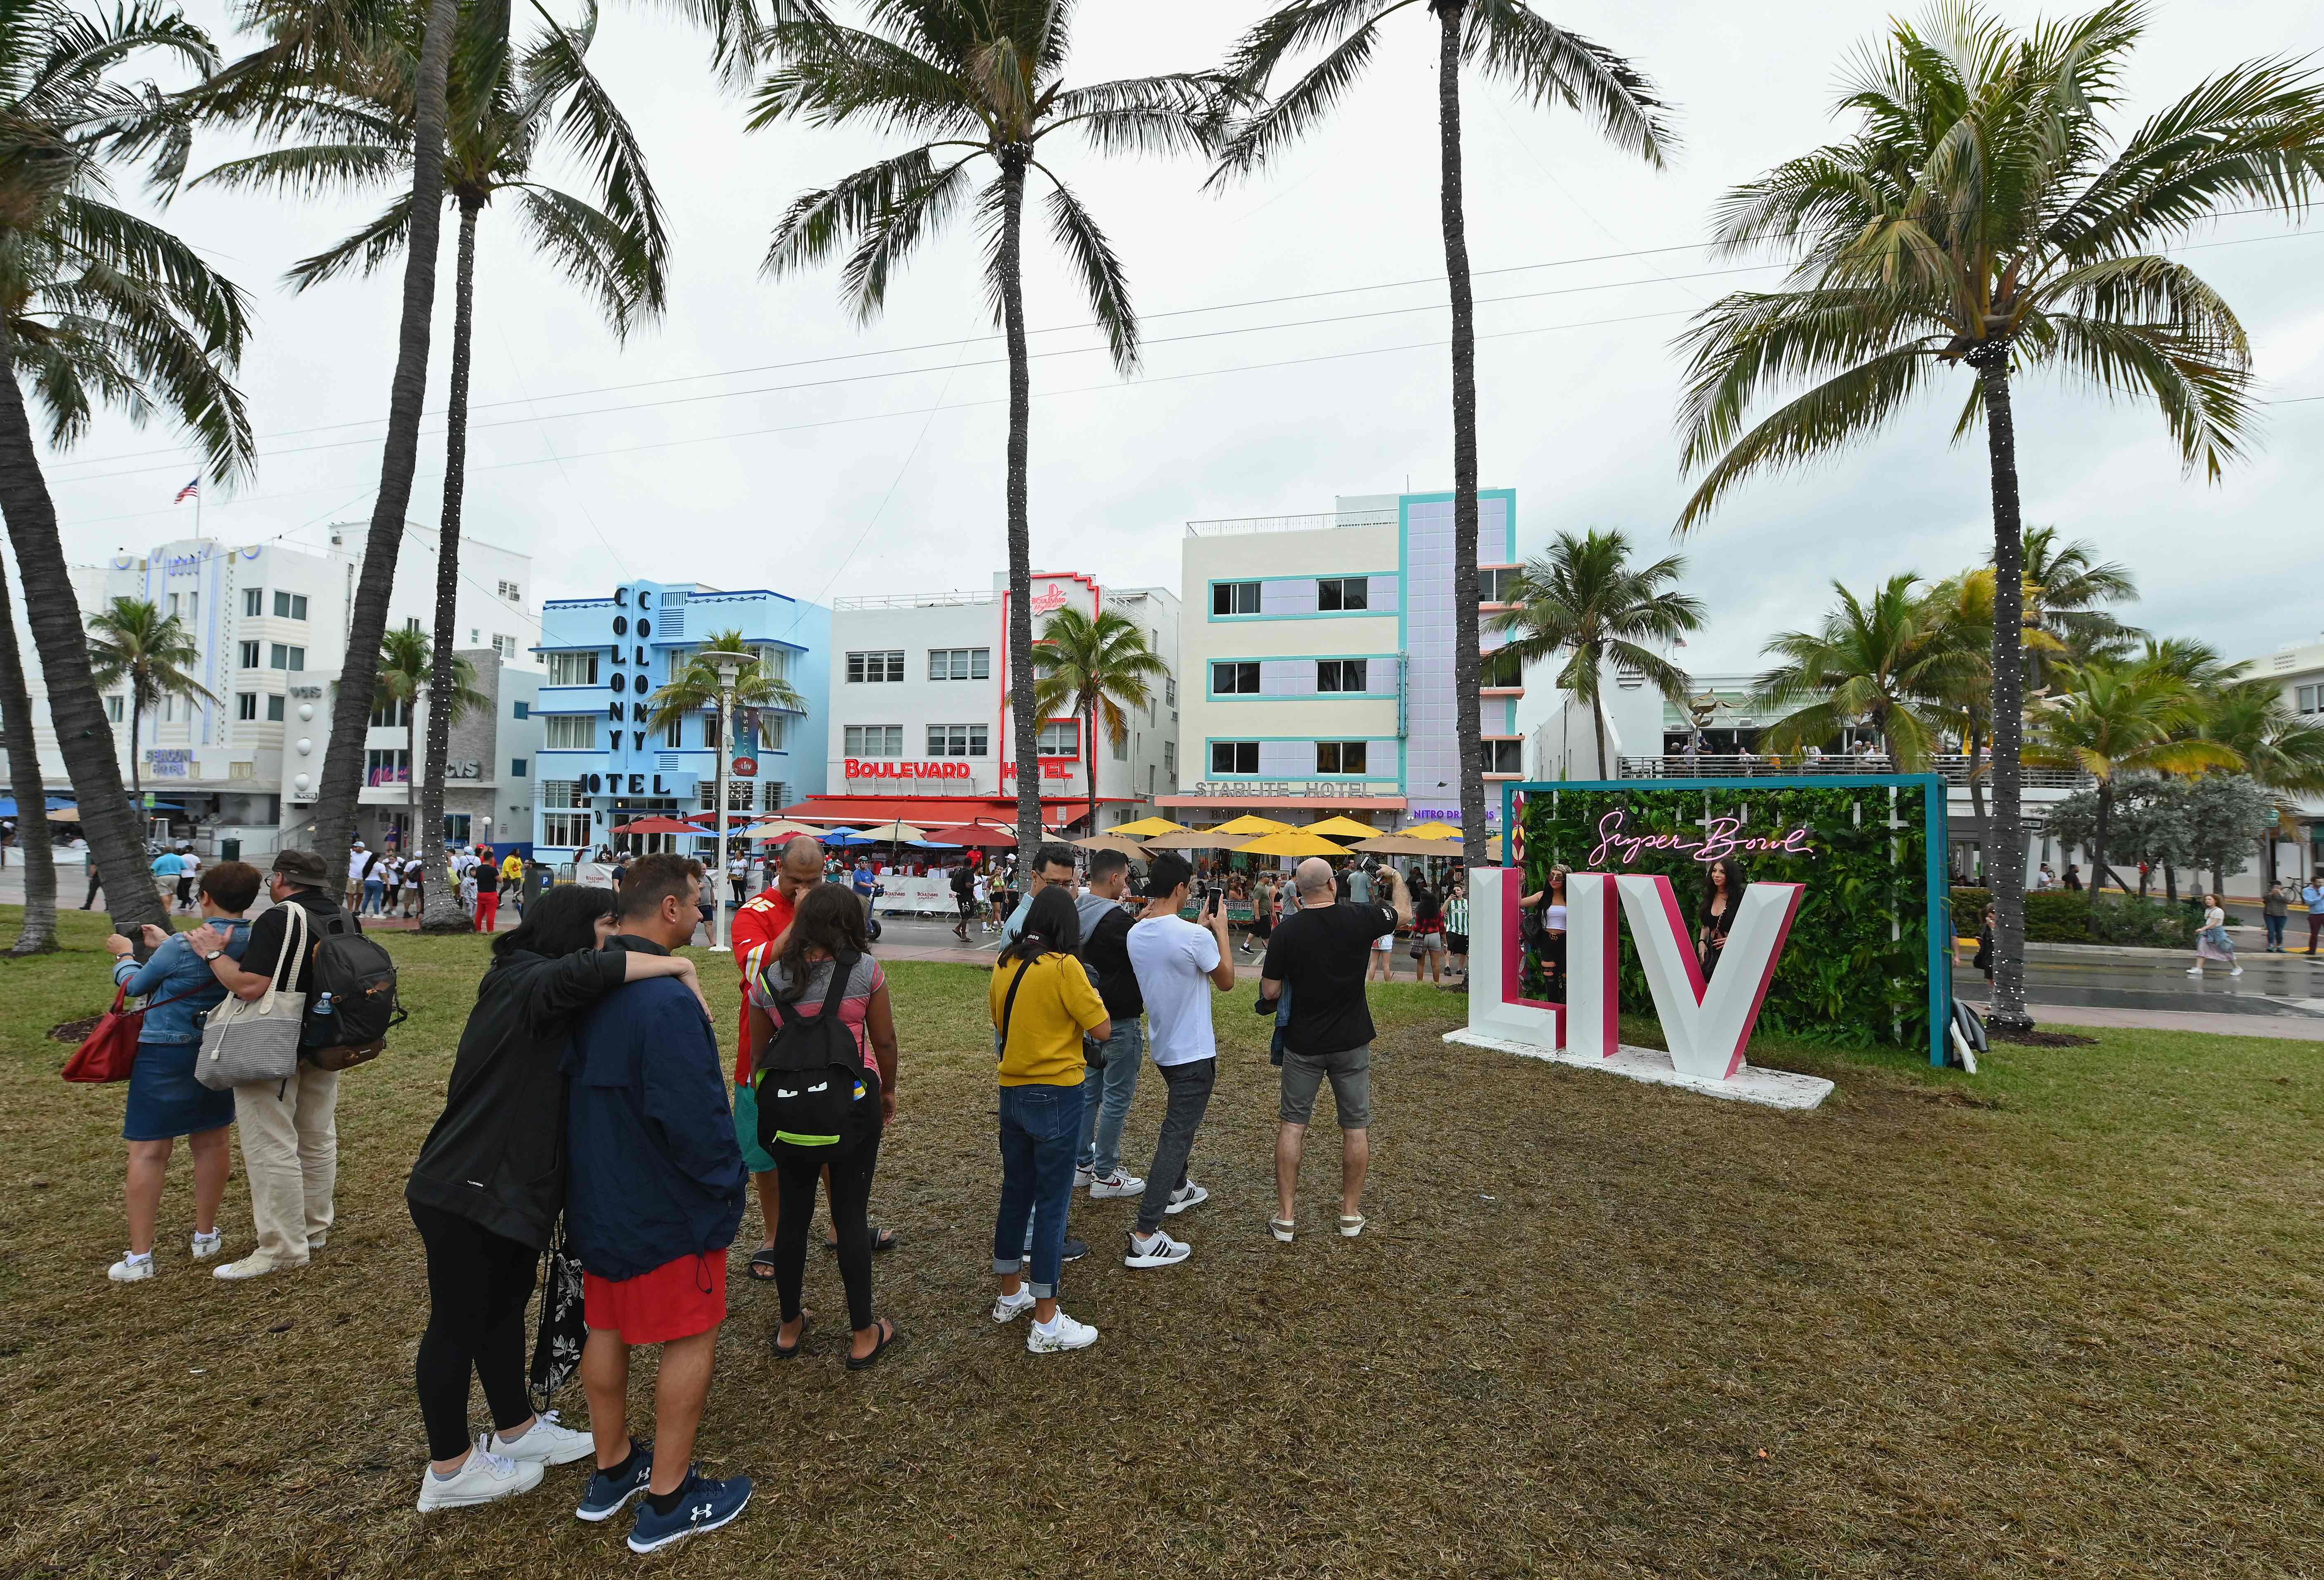 El Super Bowl LIV ya se vive en Miami. Todo está lista para la fiesta deportiva más importante de Estados Unidos. (Foto Prensa Libre: AFP)